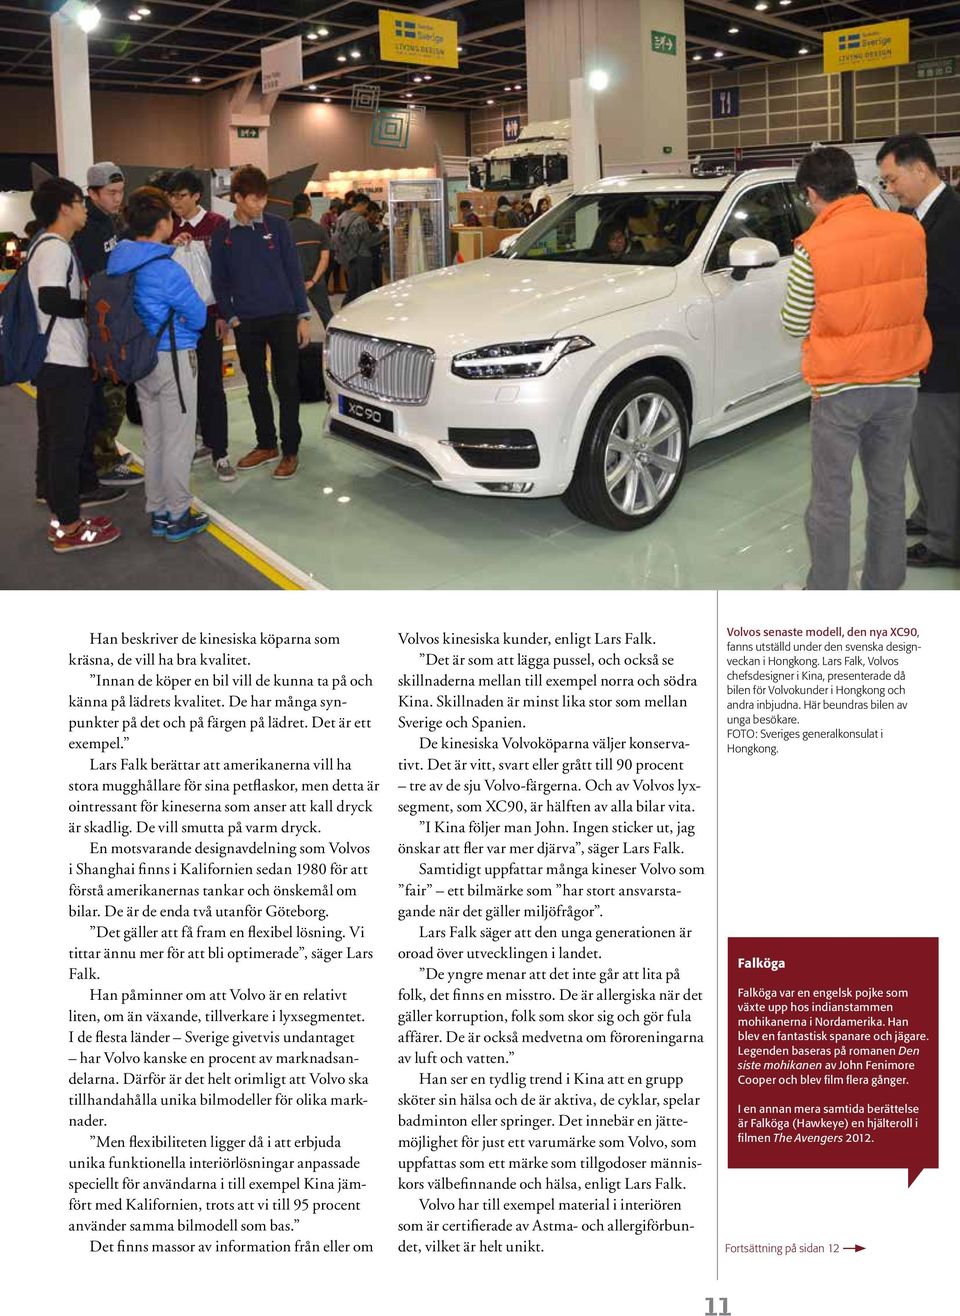 De vill smutta på varm dryck. En motsvarande designavdelning som Volvos i Shanghai finns i Kalifornien sedan 1980 för att förstå amerikanernas tankar och önskemål om bilar.